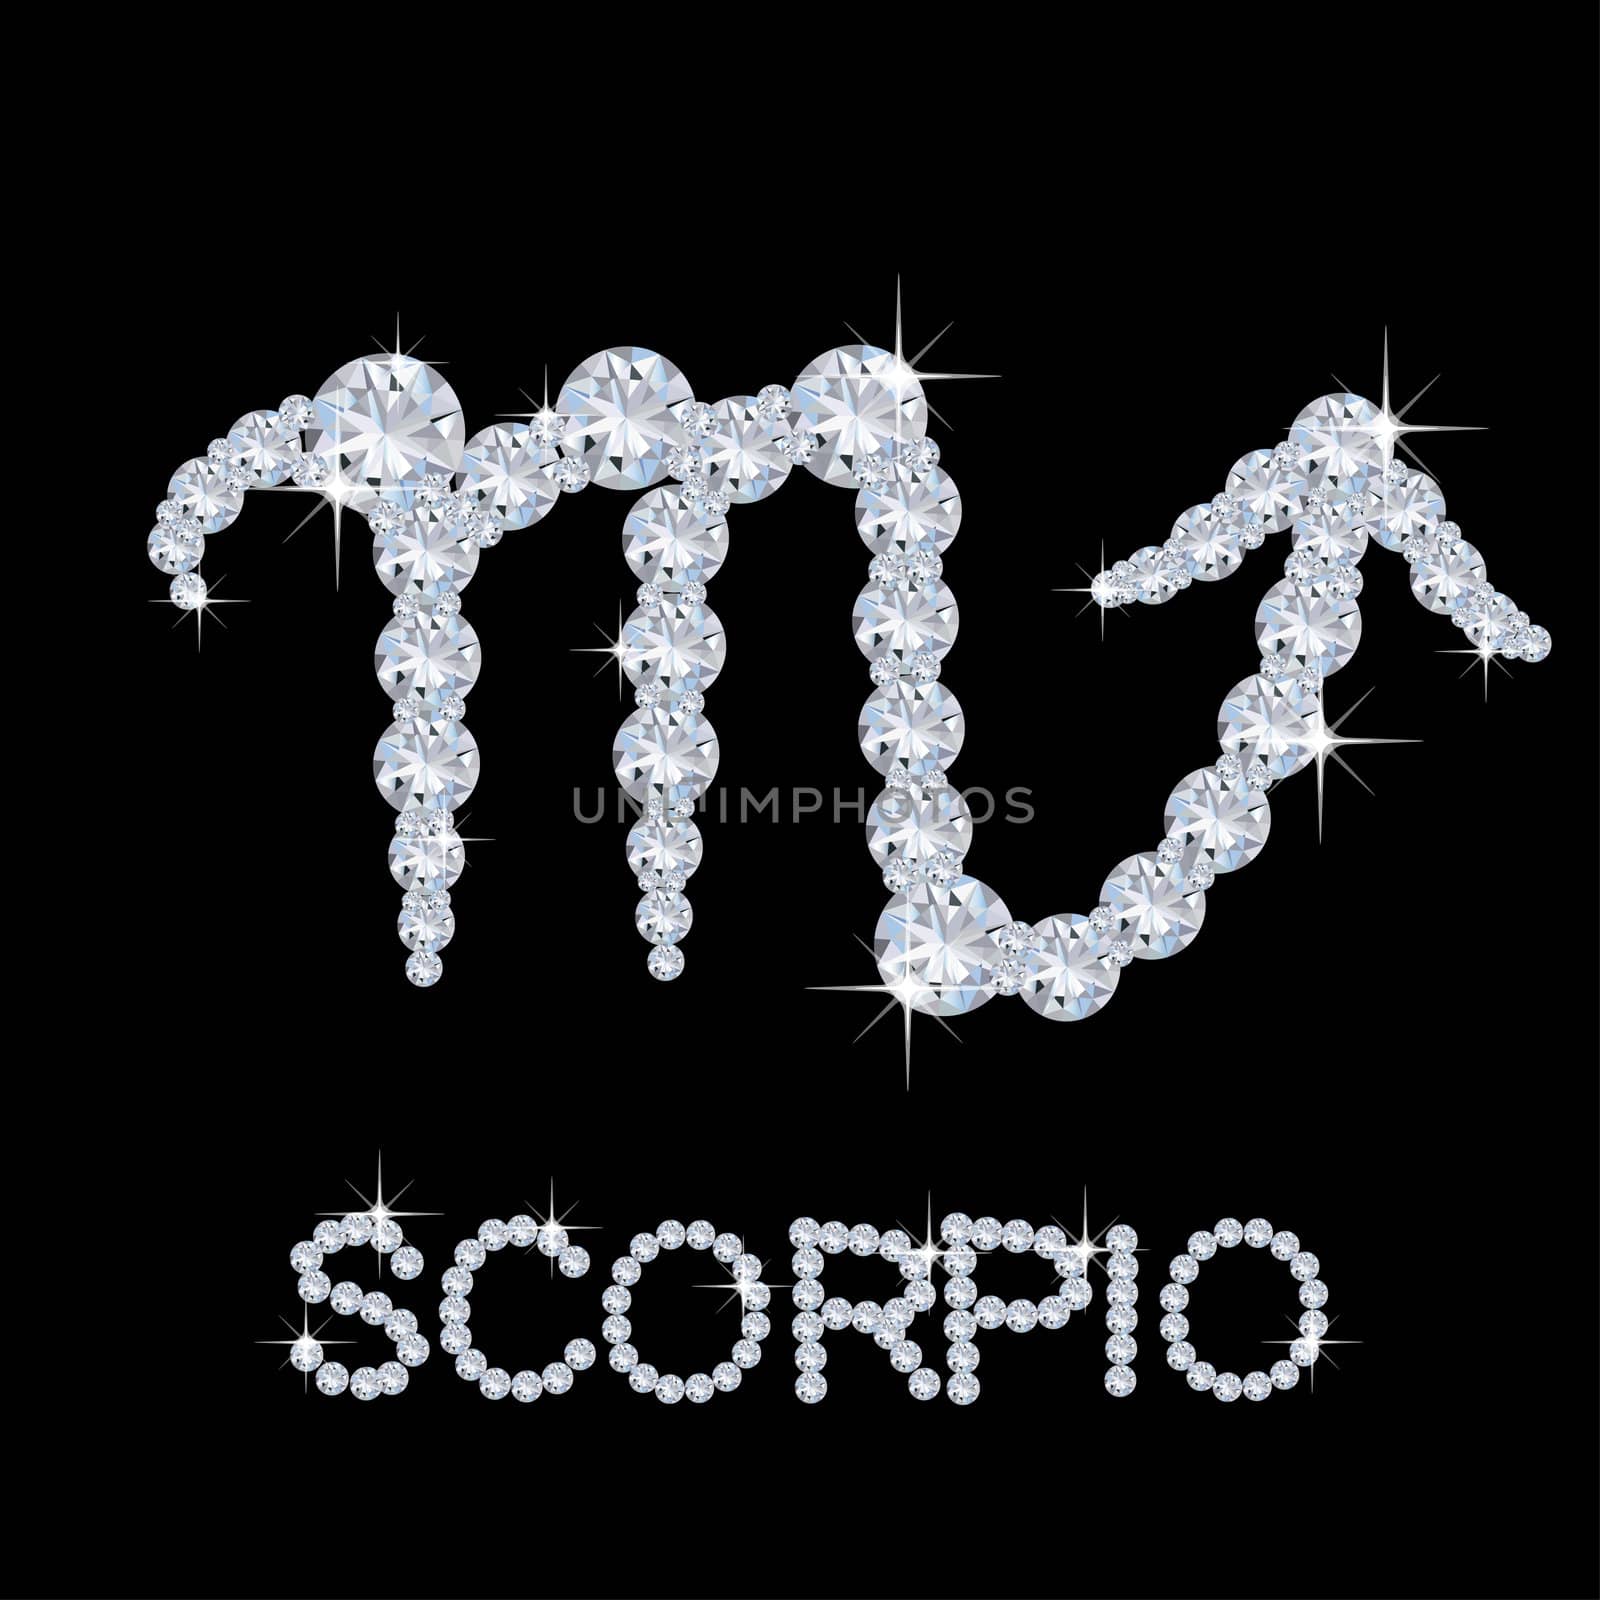 Diamond Zodiac Scorpio by peromarketing